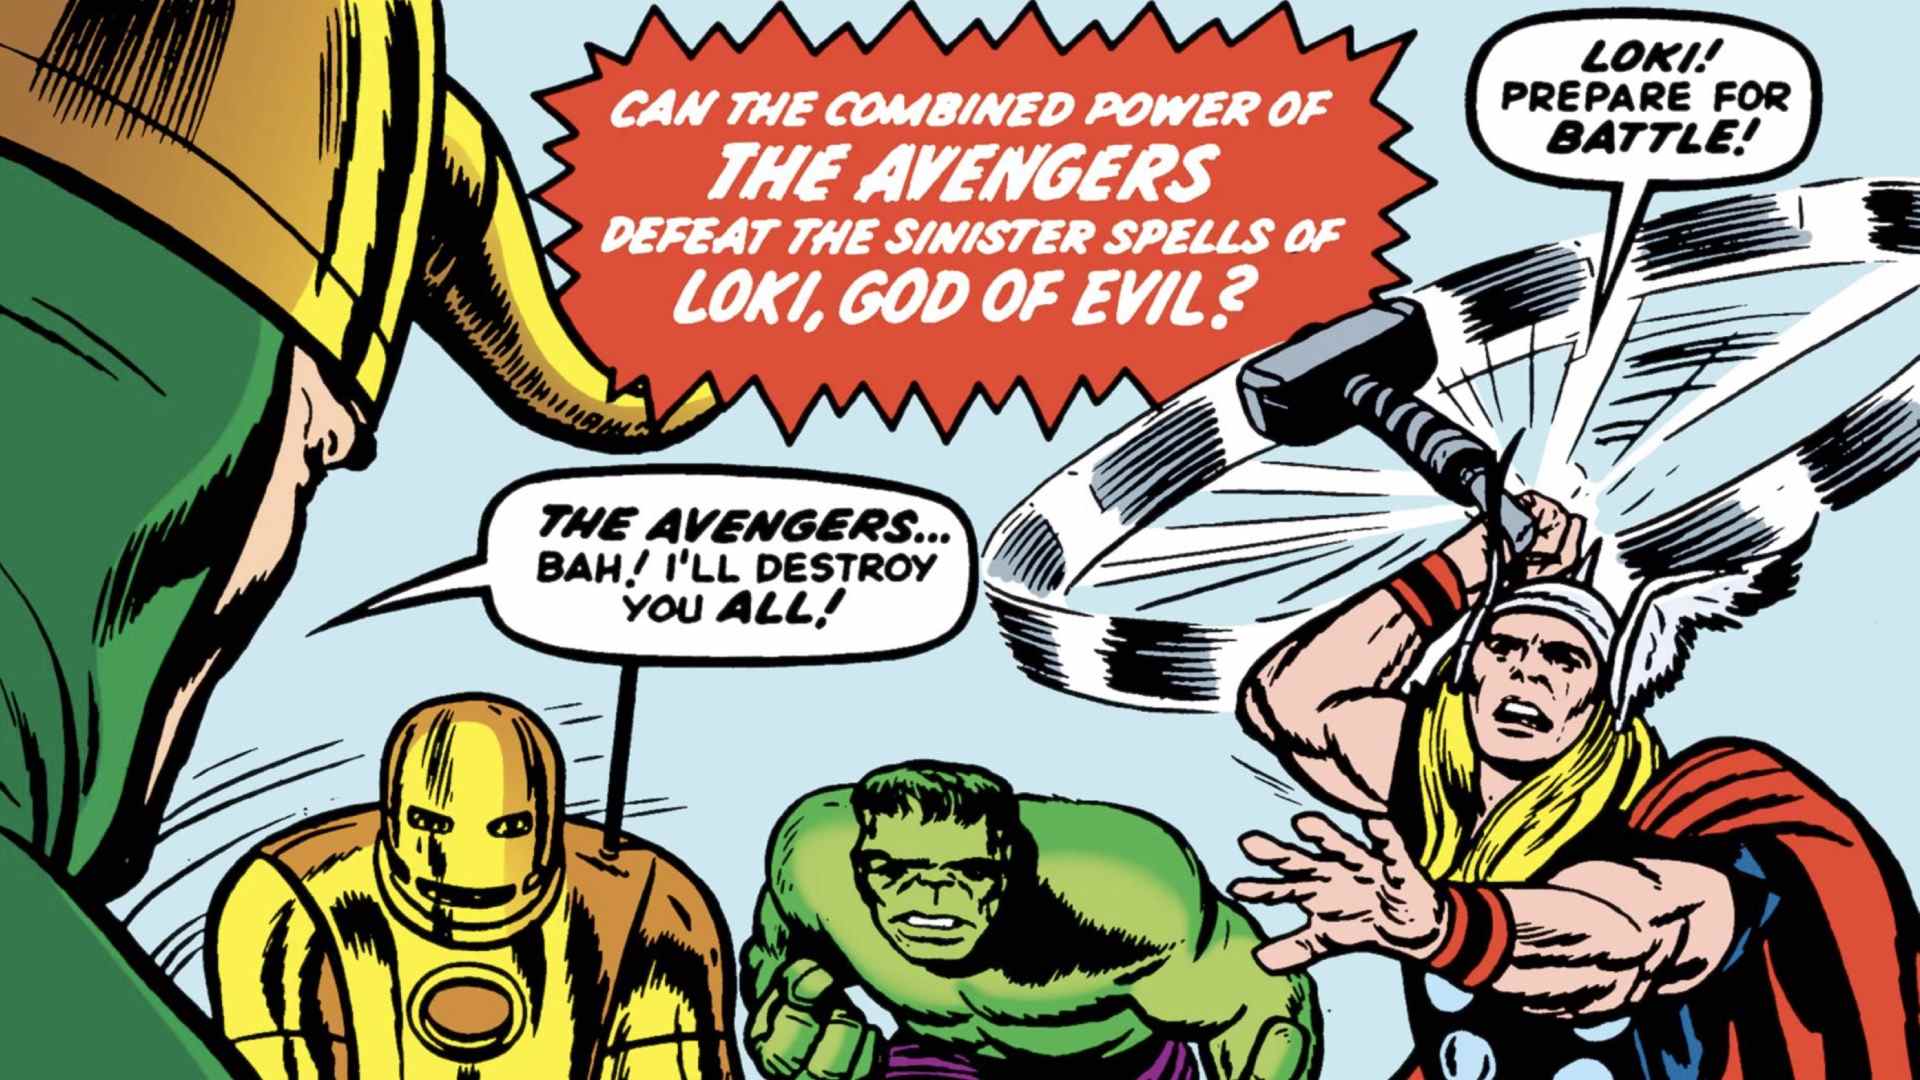 Extrait de la couverture des Avengers #1